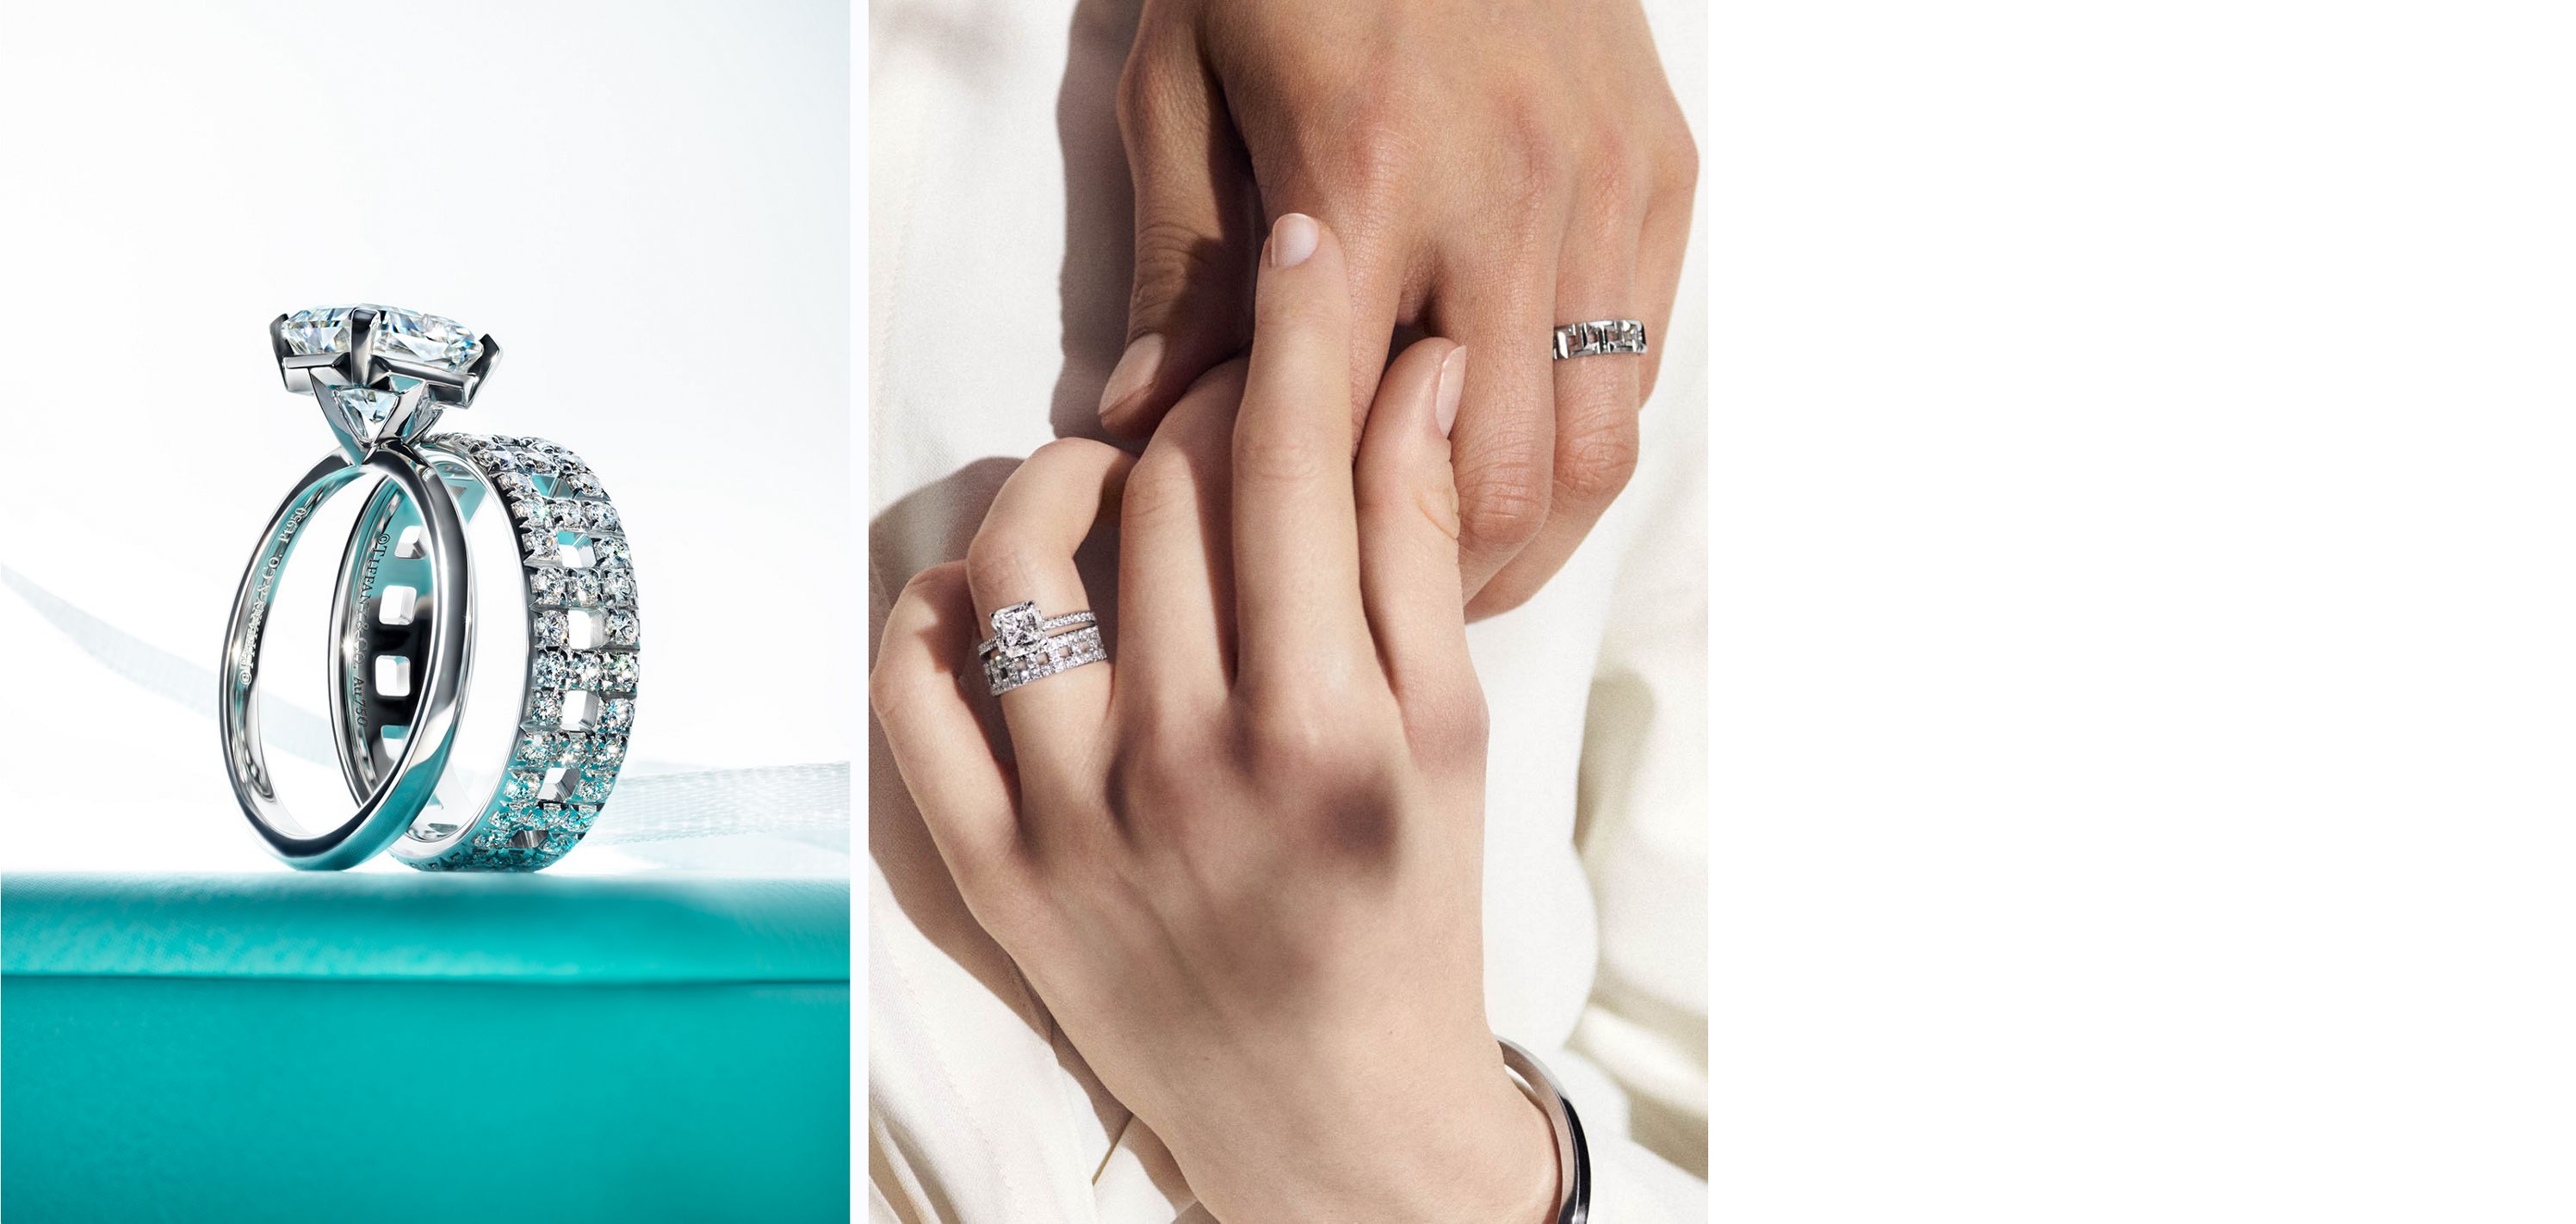 Tiffany & Co. - Tiffany & Co. Novo Diamond Wedding Band Ring